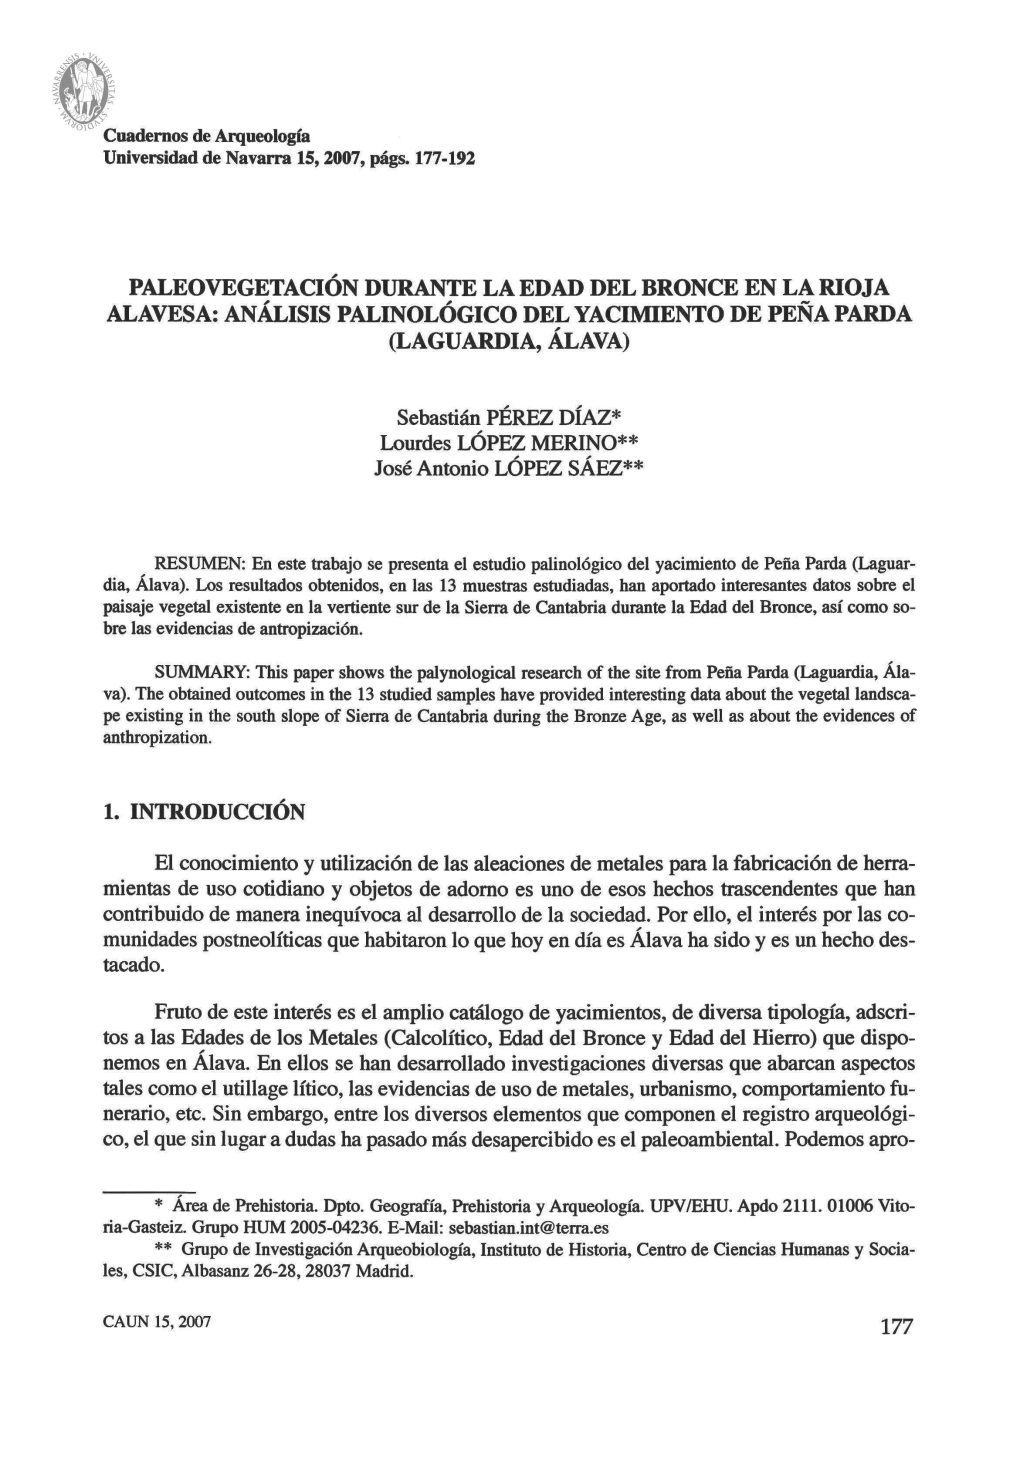 Paleovegetación Durante La Edad Del Bronce En La Rioja Alavesa: Análisis Palinológico Del Yacimiento De Peña Parda (Laguardia, Álava)